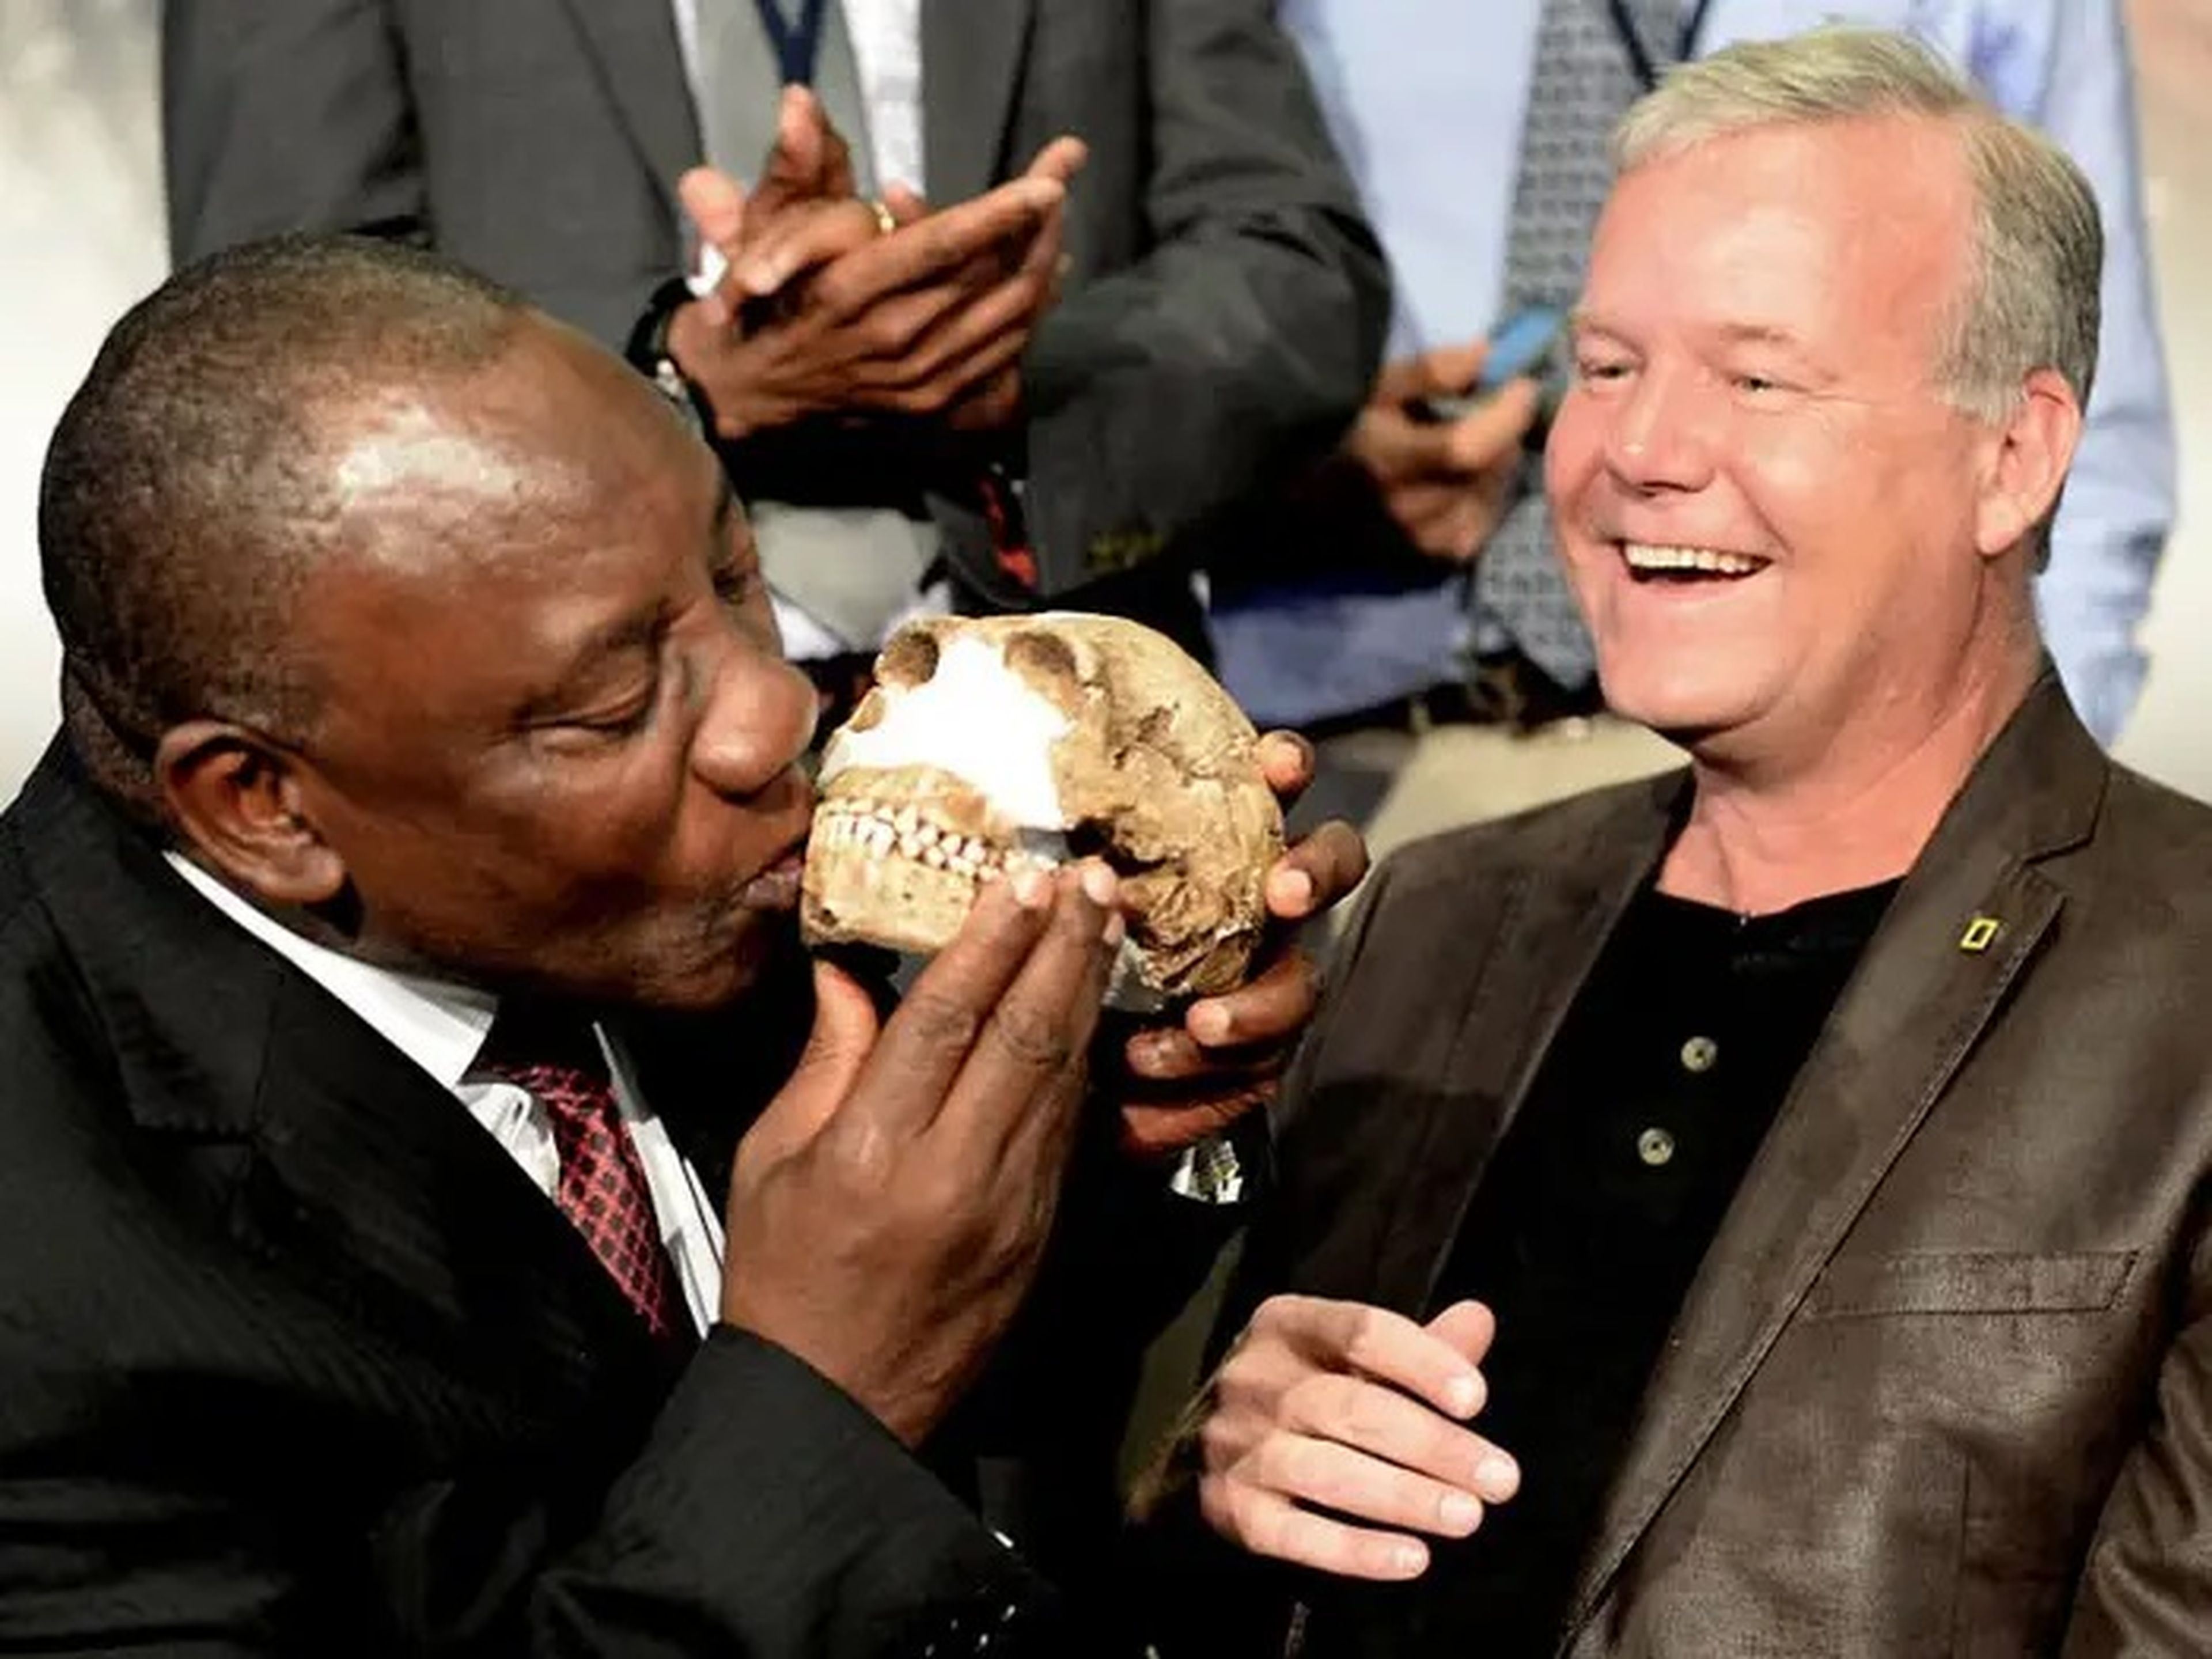 El antiguo pariente humano que se muestra aquí, llamado Homo naledi, tenía un cerebro más pequeño y dedos inusualmente curvados.